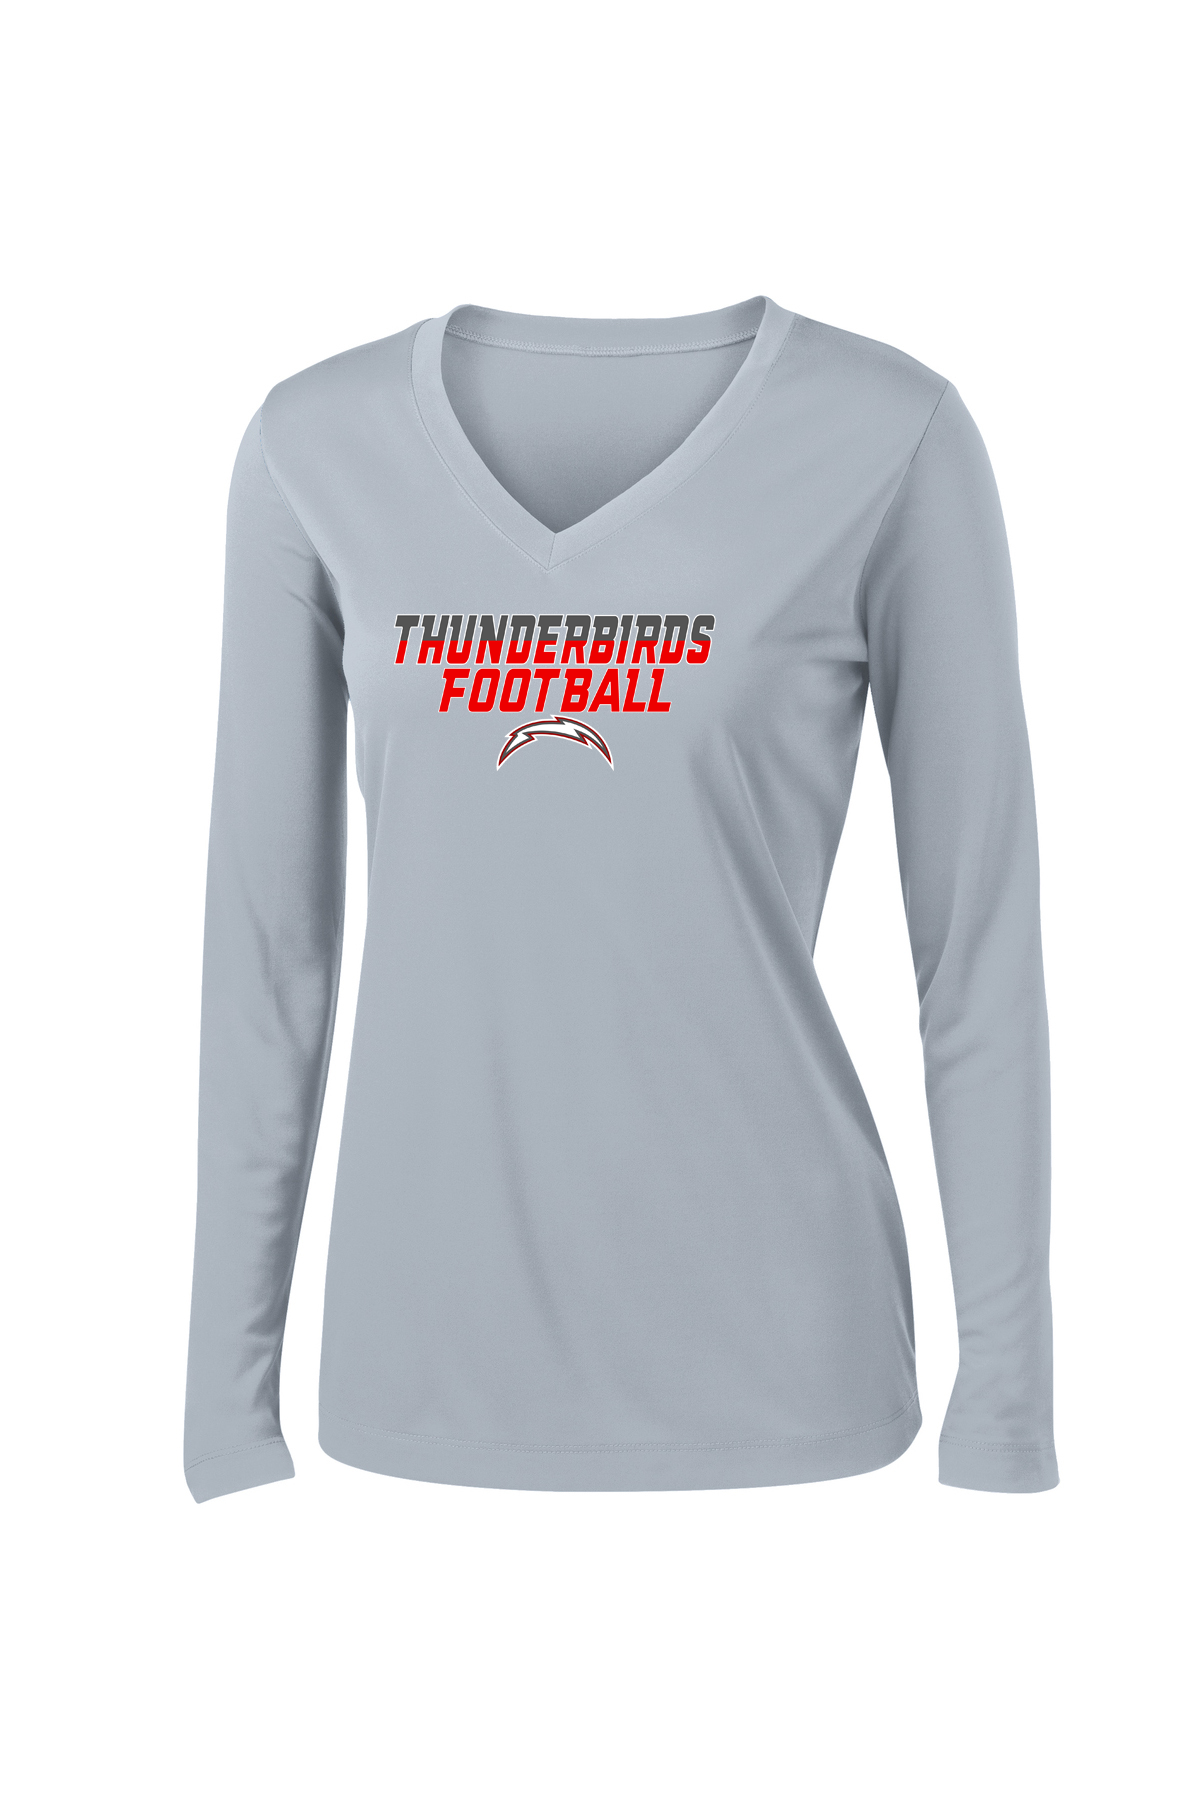 Connetquot Football Women's Long Sleeve Performance Shirt